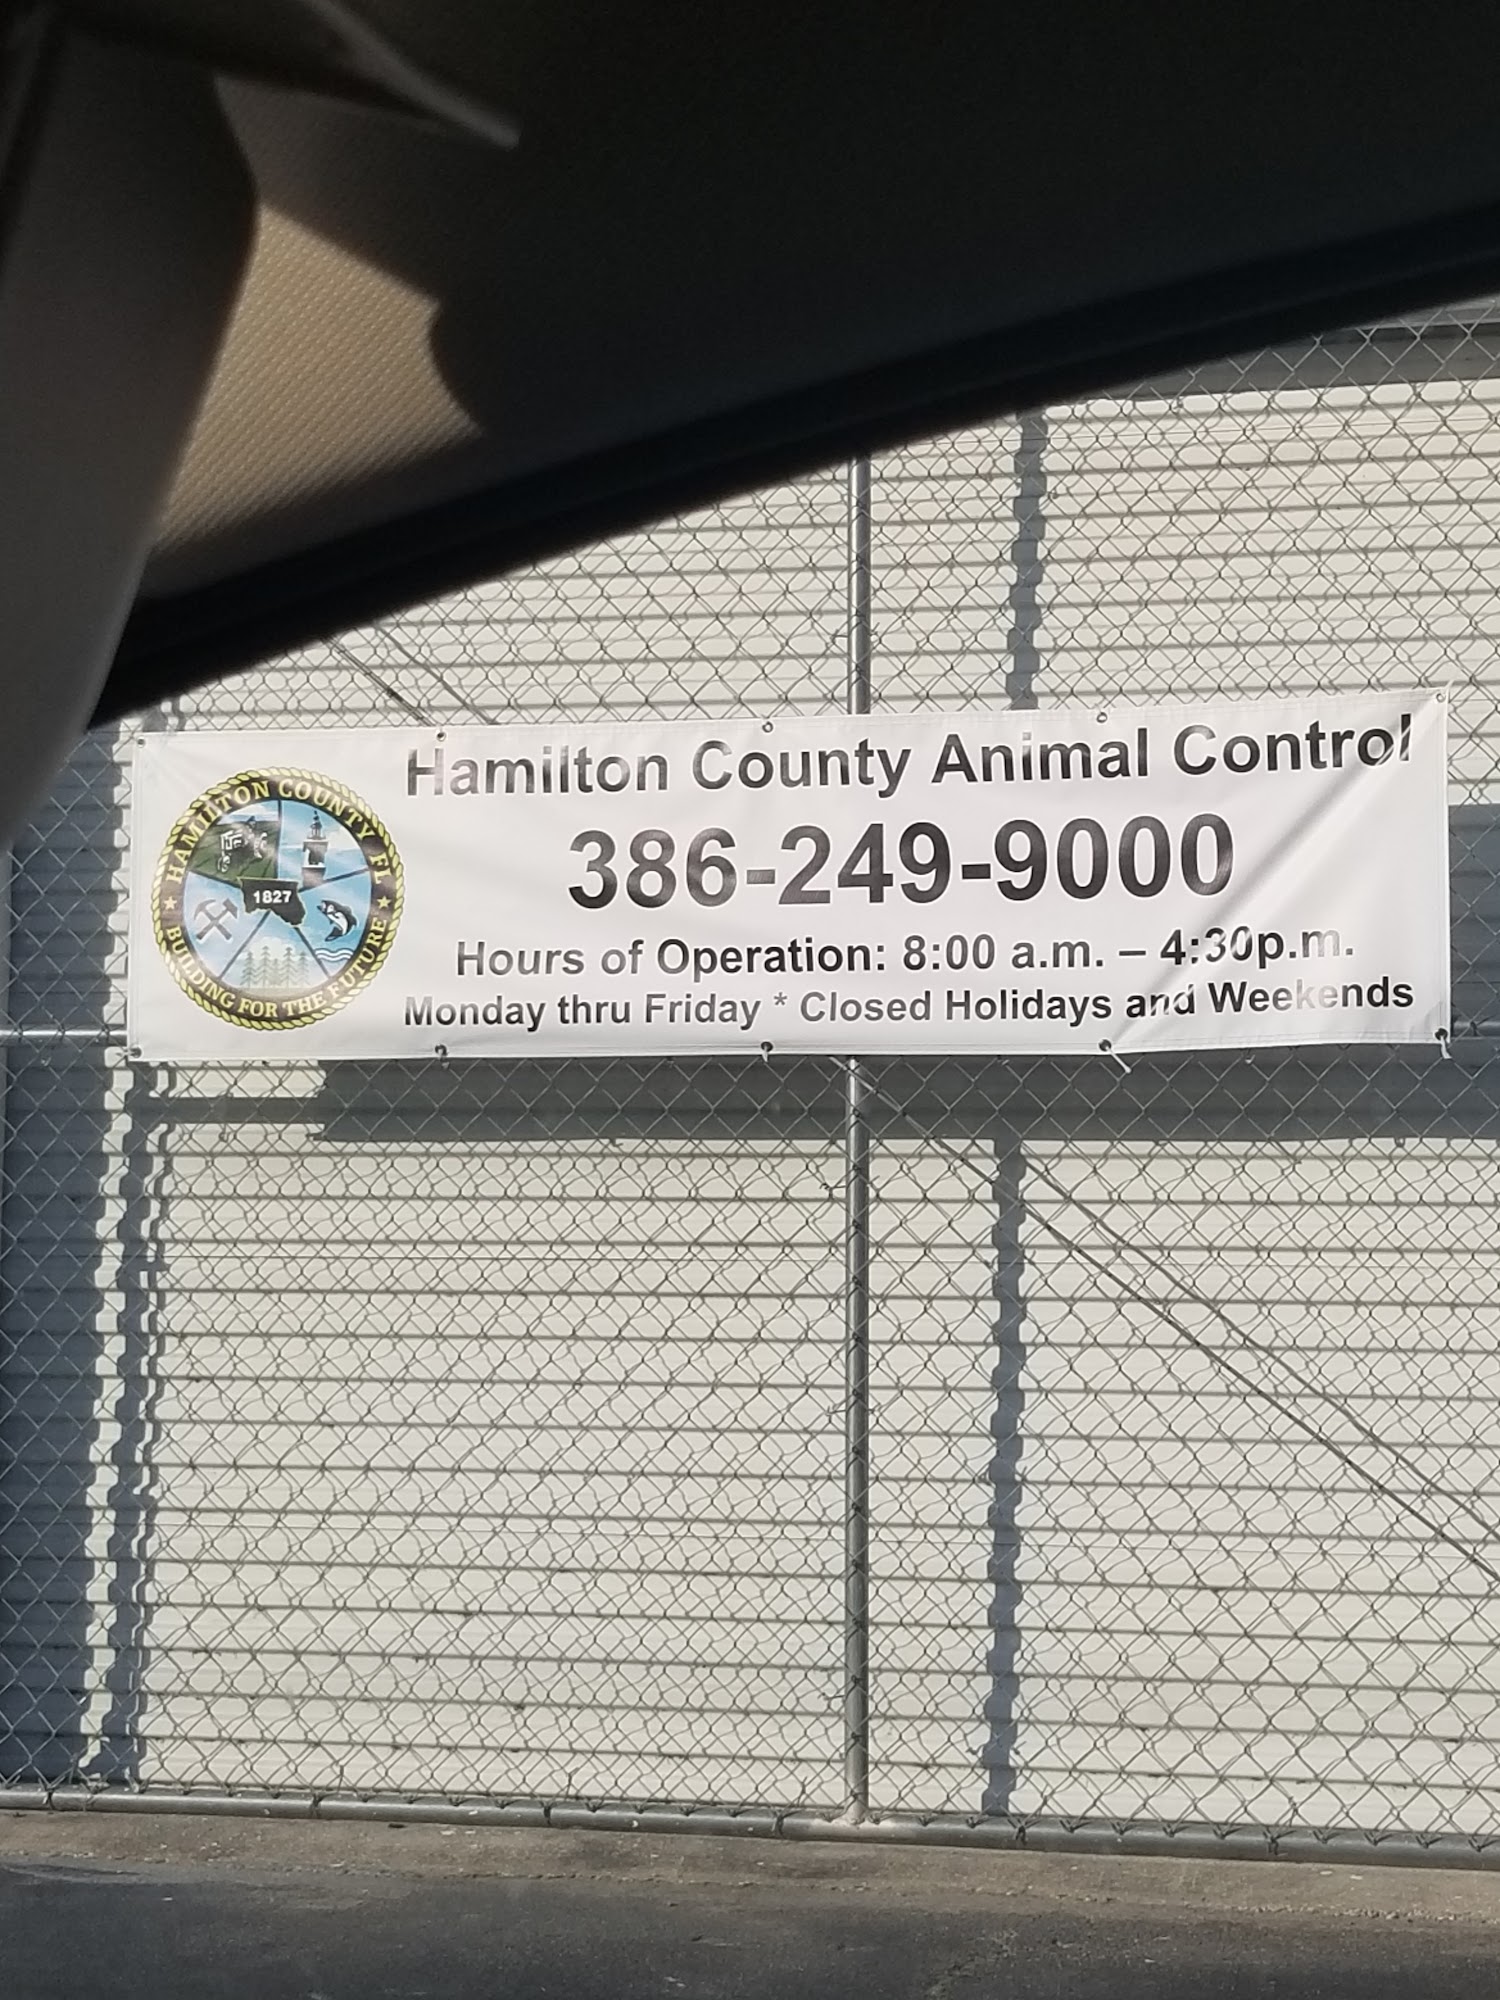 Hamilton county animal control 910 N W U.S. Hwy 41, Jasper Florida 32052